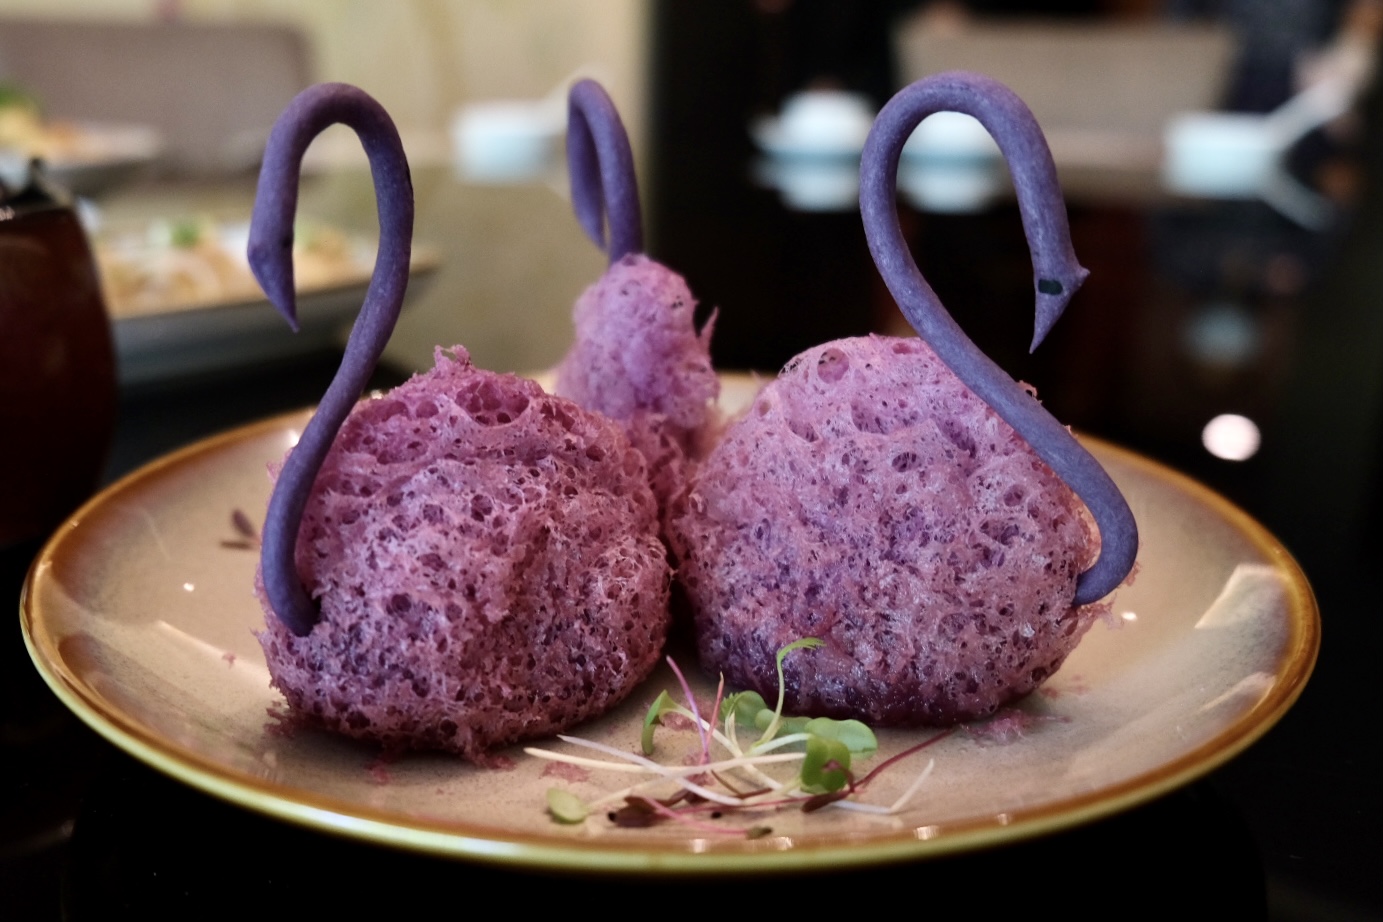 エビと豚肉のフィリングが入った白鳥を模した紫芋のコロッケ。